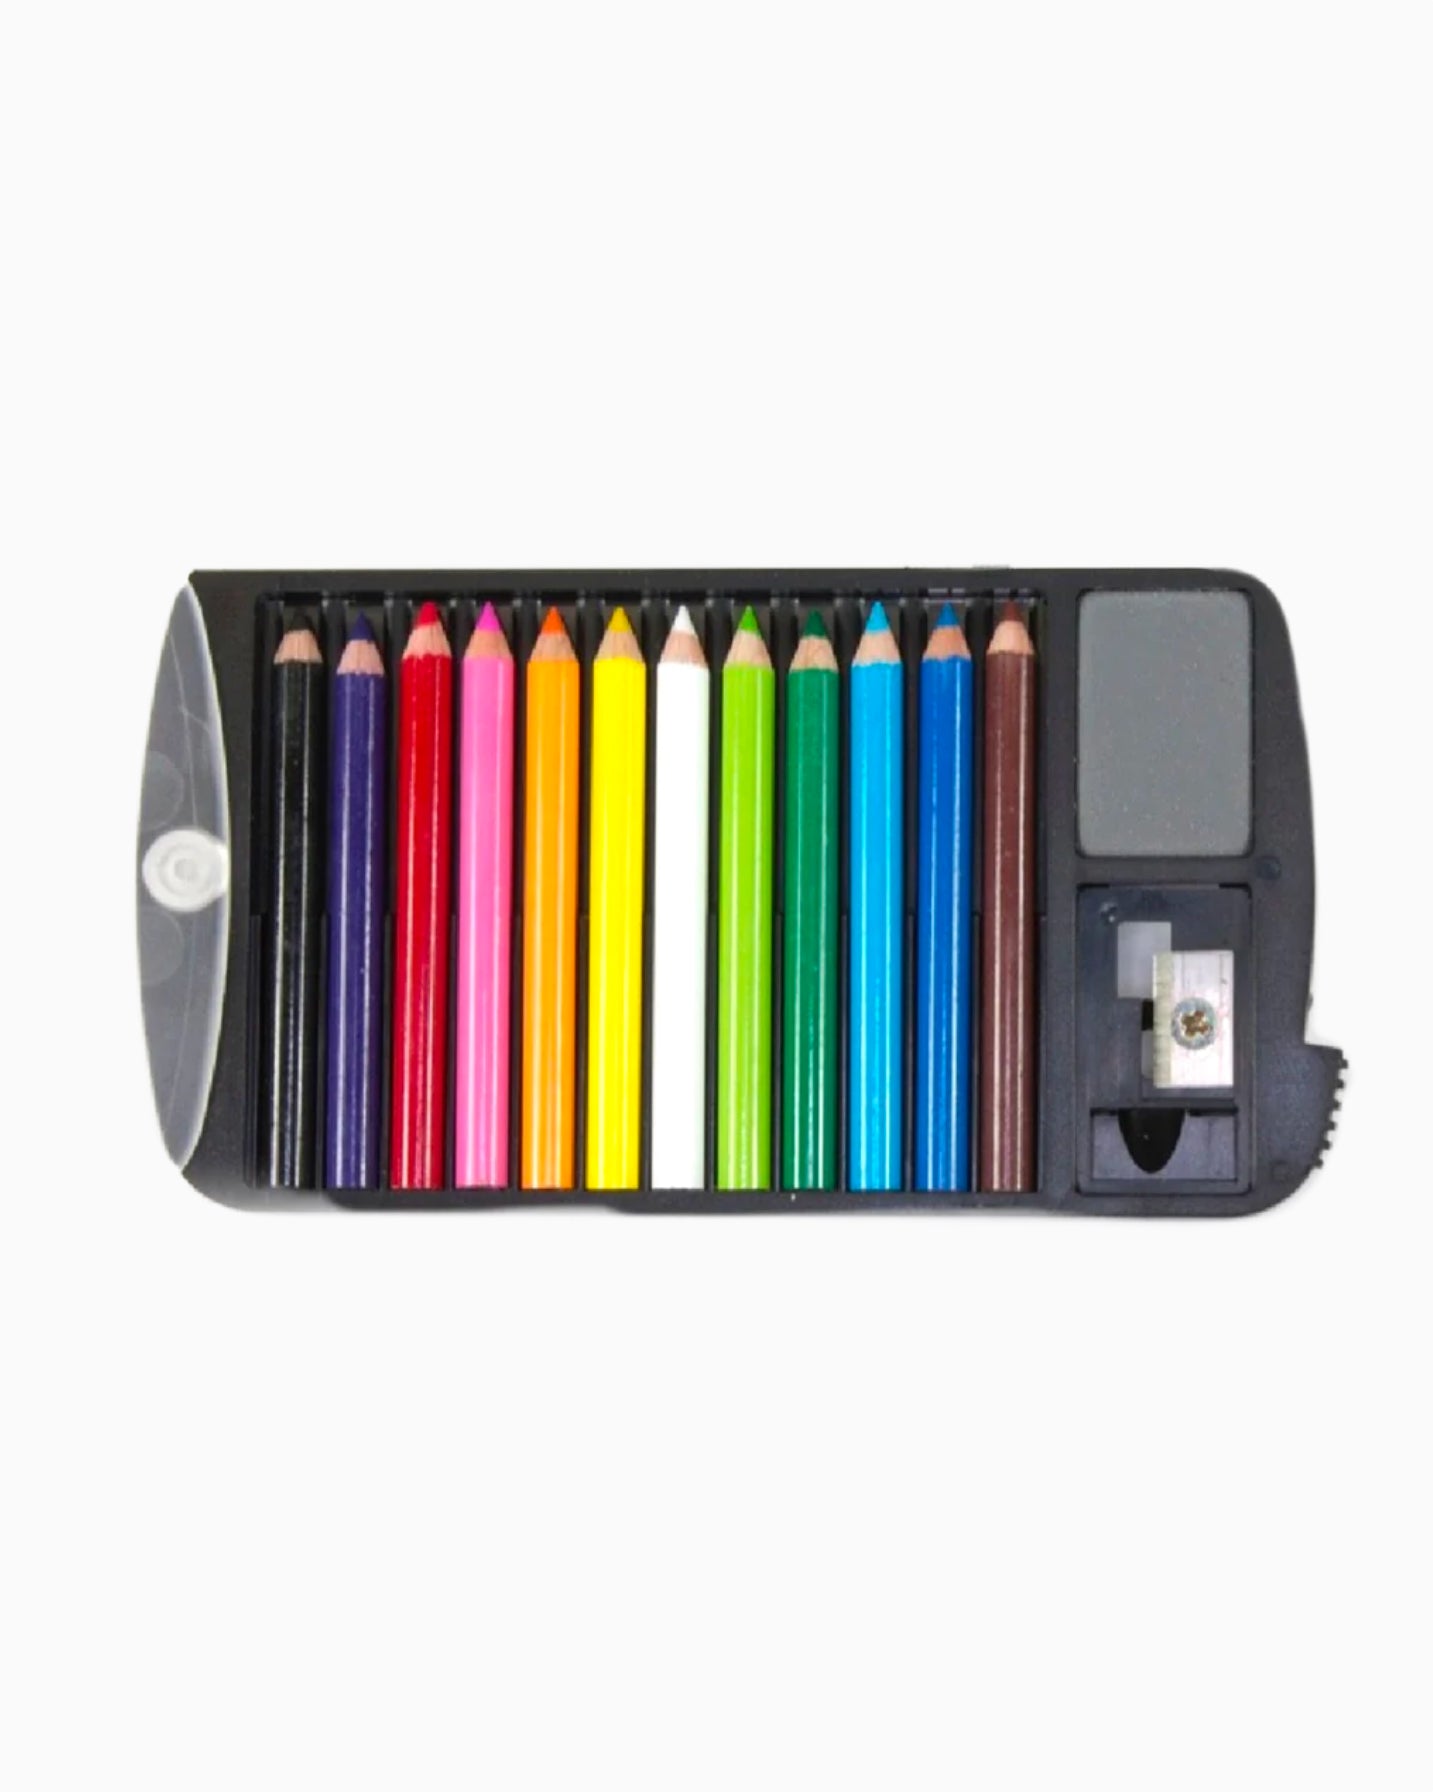 Super Tiny Colored Pencils